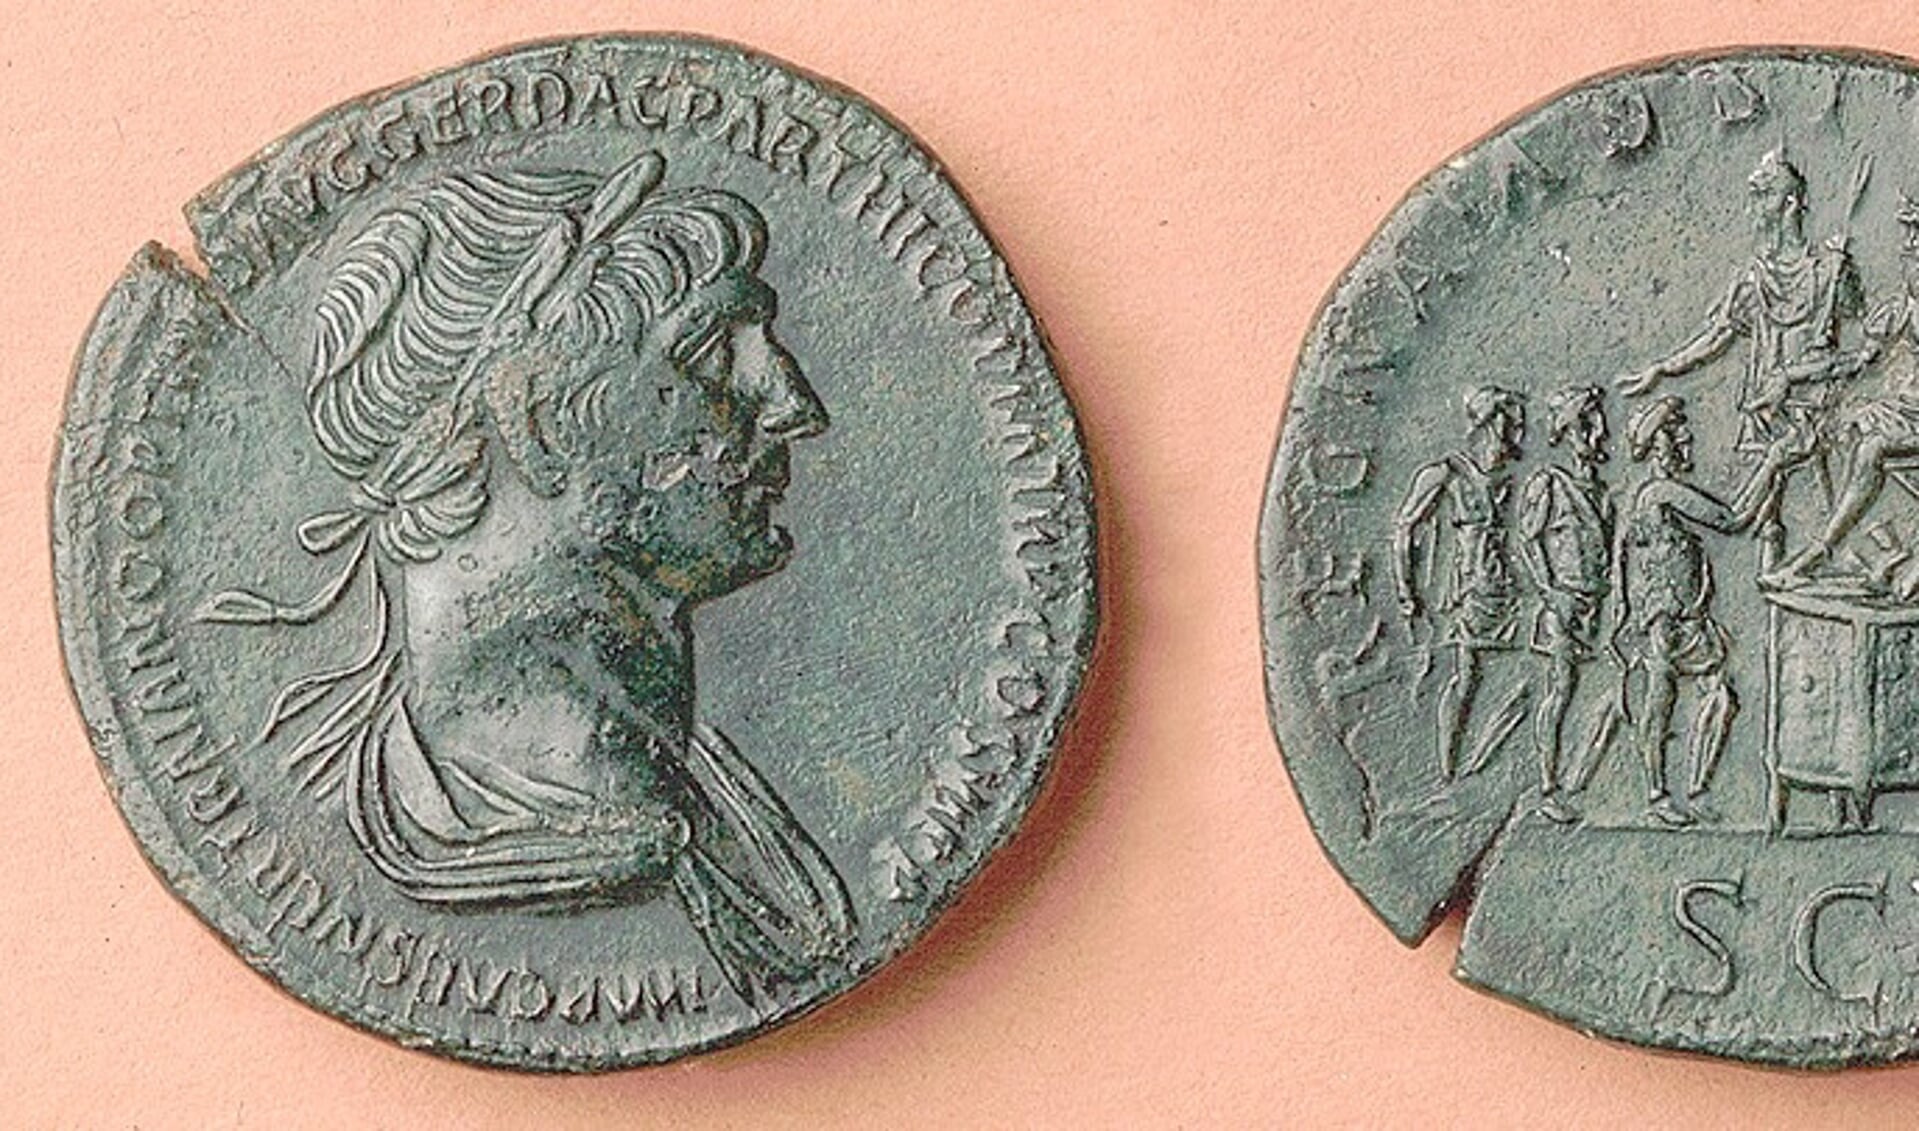 Romeinse munt met afbeelding van keizer Trajanus